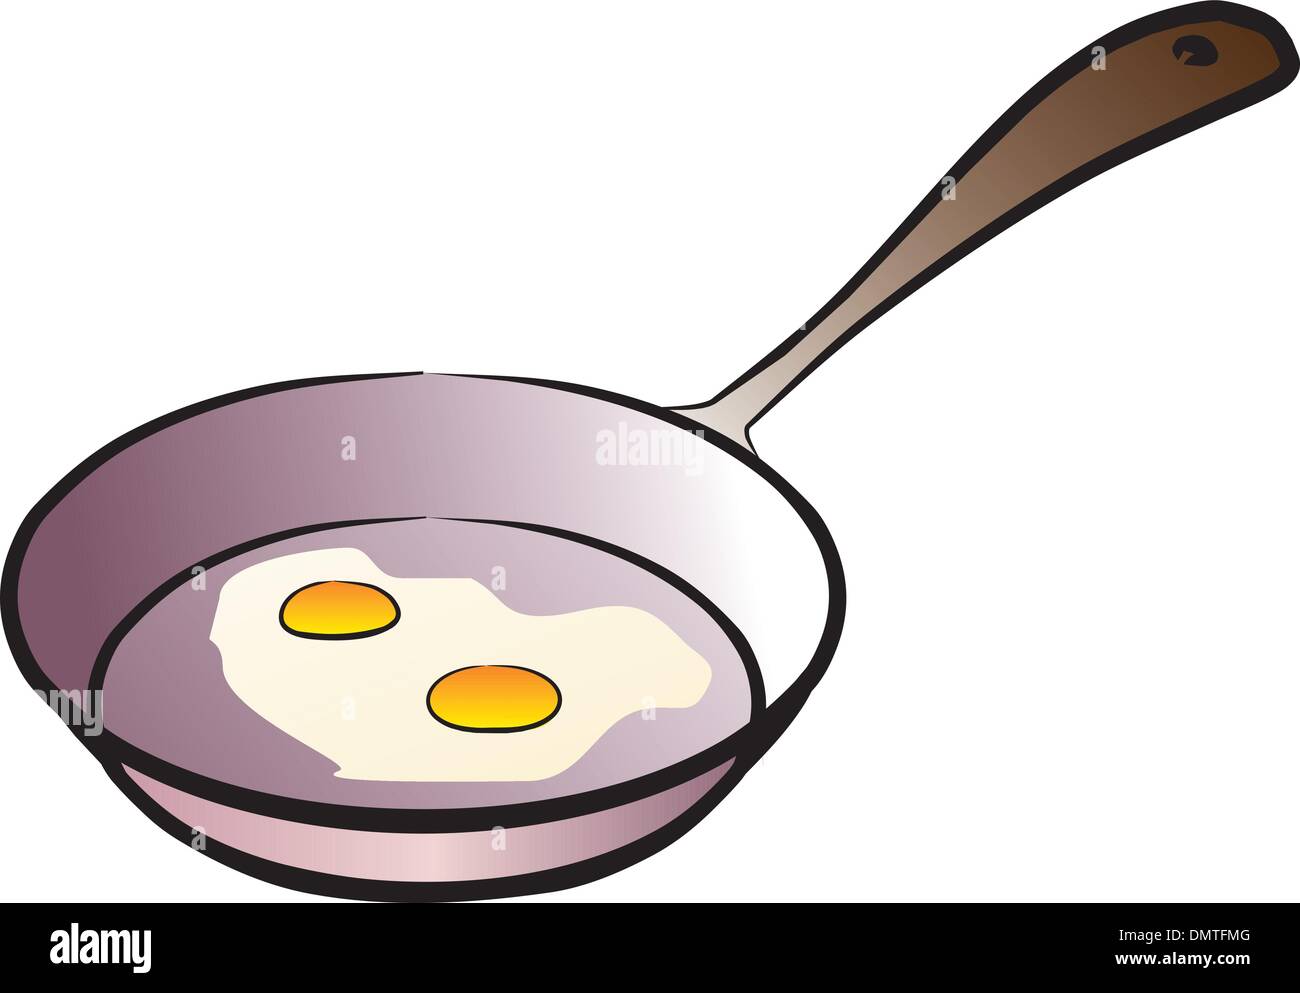 Мультяшная сковородка с яичницей